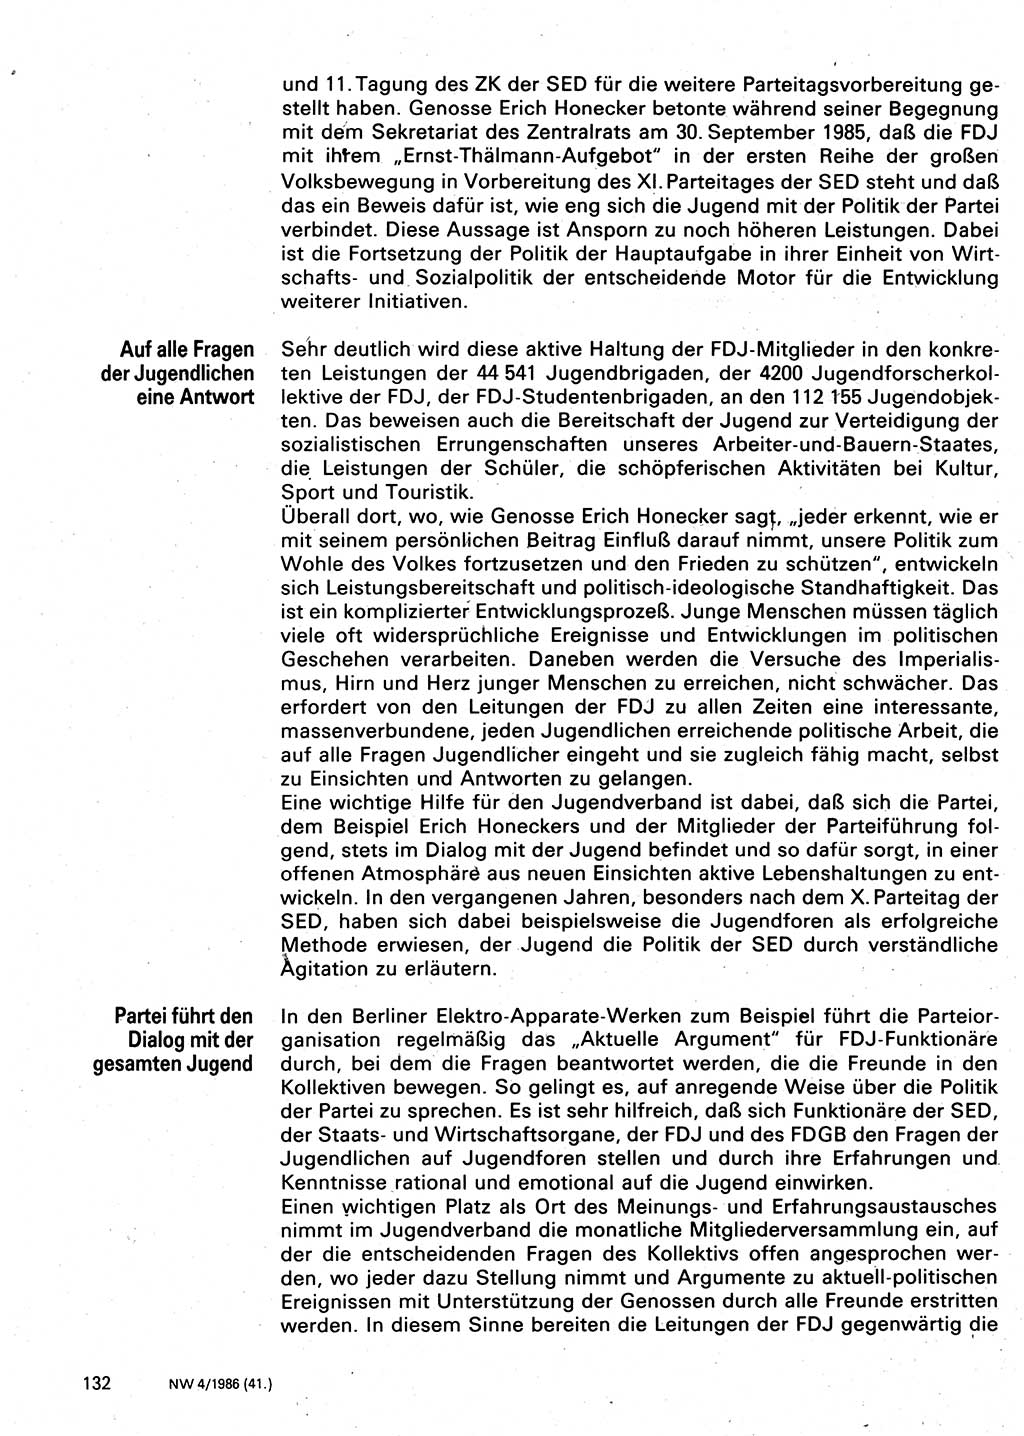 Neuer Weg (NW), Organ des Zentralkomitees (ZK) der SED (Sozialistische Einheitspartei Deutschlands) für Fragen des Parteilebens, 41. Jahrgang [Deutsche Demokratische Republik (DDR)] 1986, Seite 132 (NW ZK SED DDR 1986, S. 132)